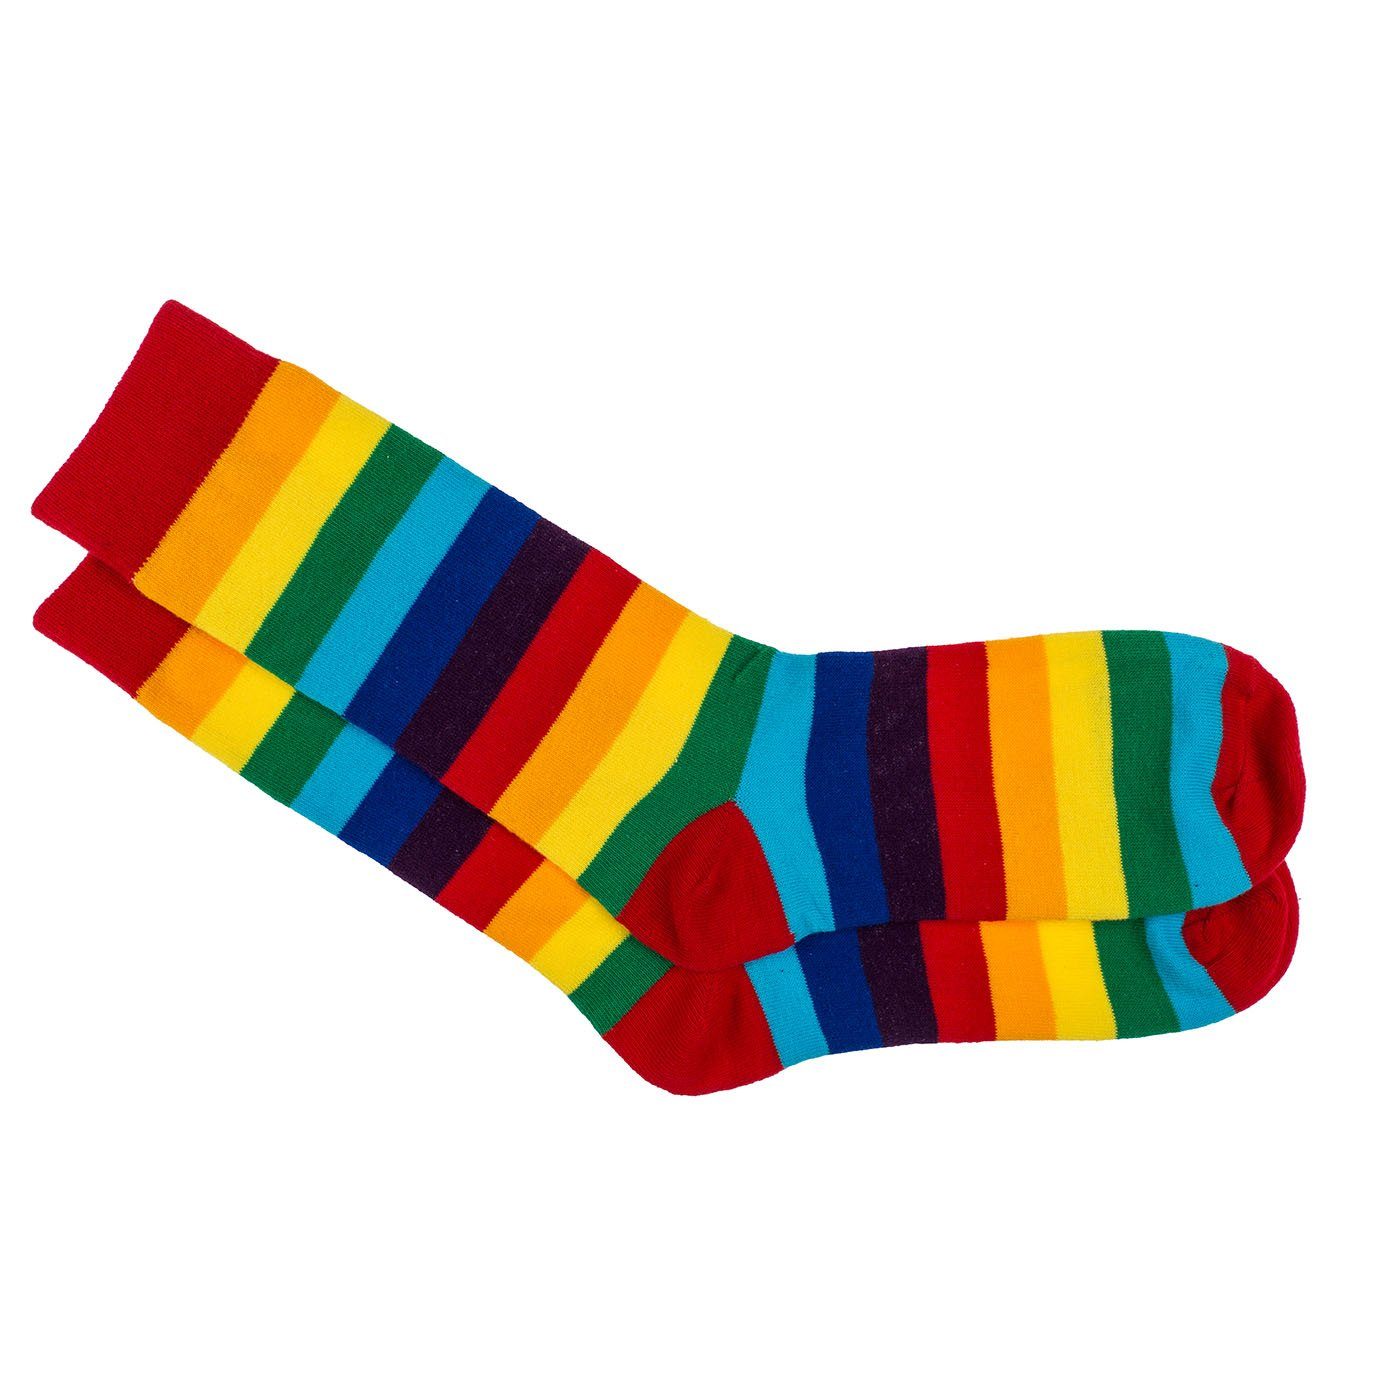 Socken in Pride, Metall-Dose Einheitsgröße Socken, ReWu